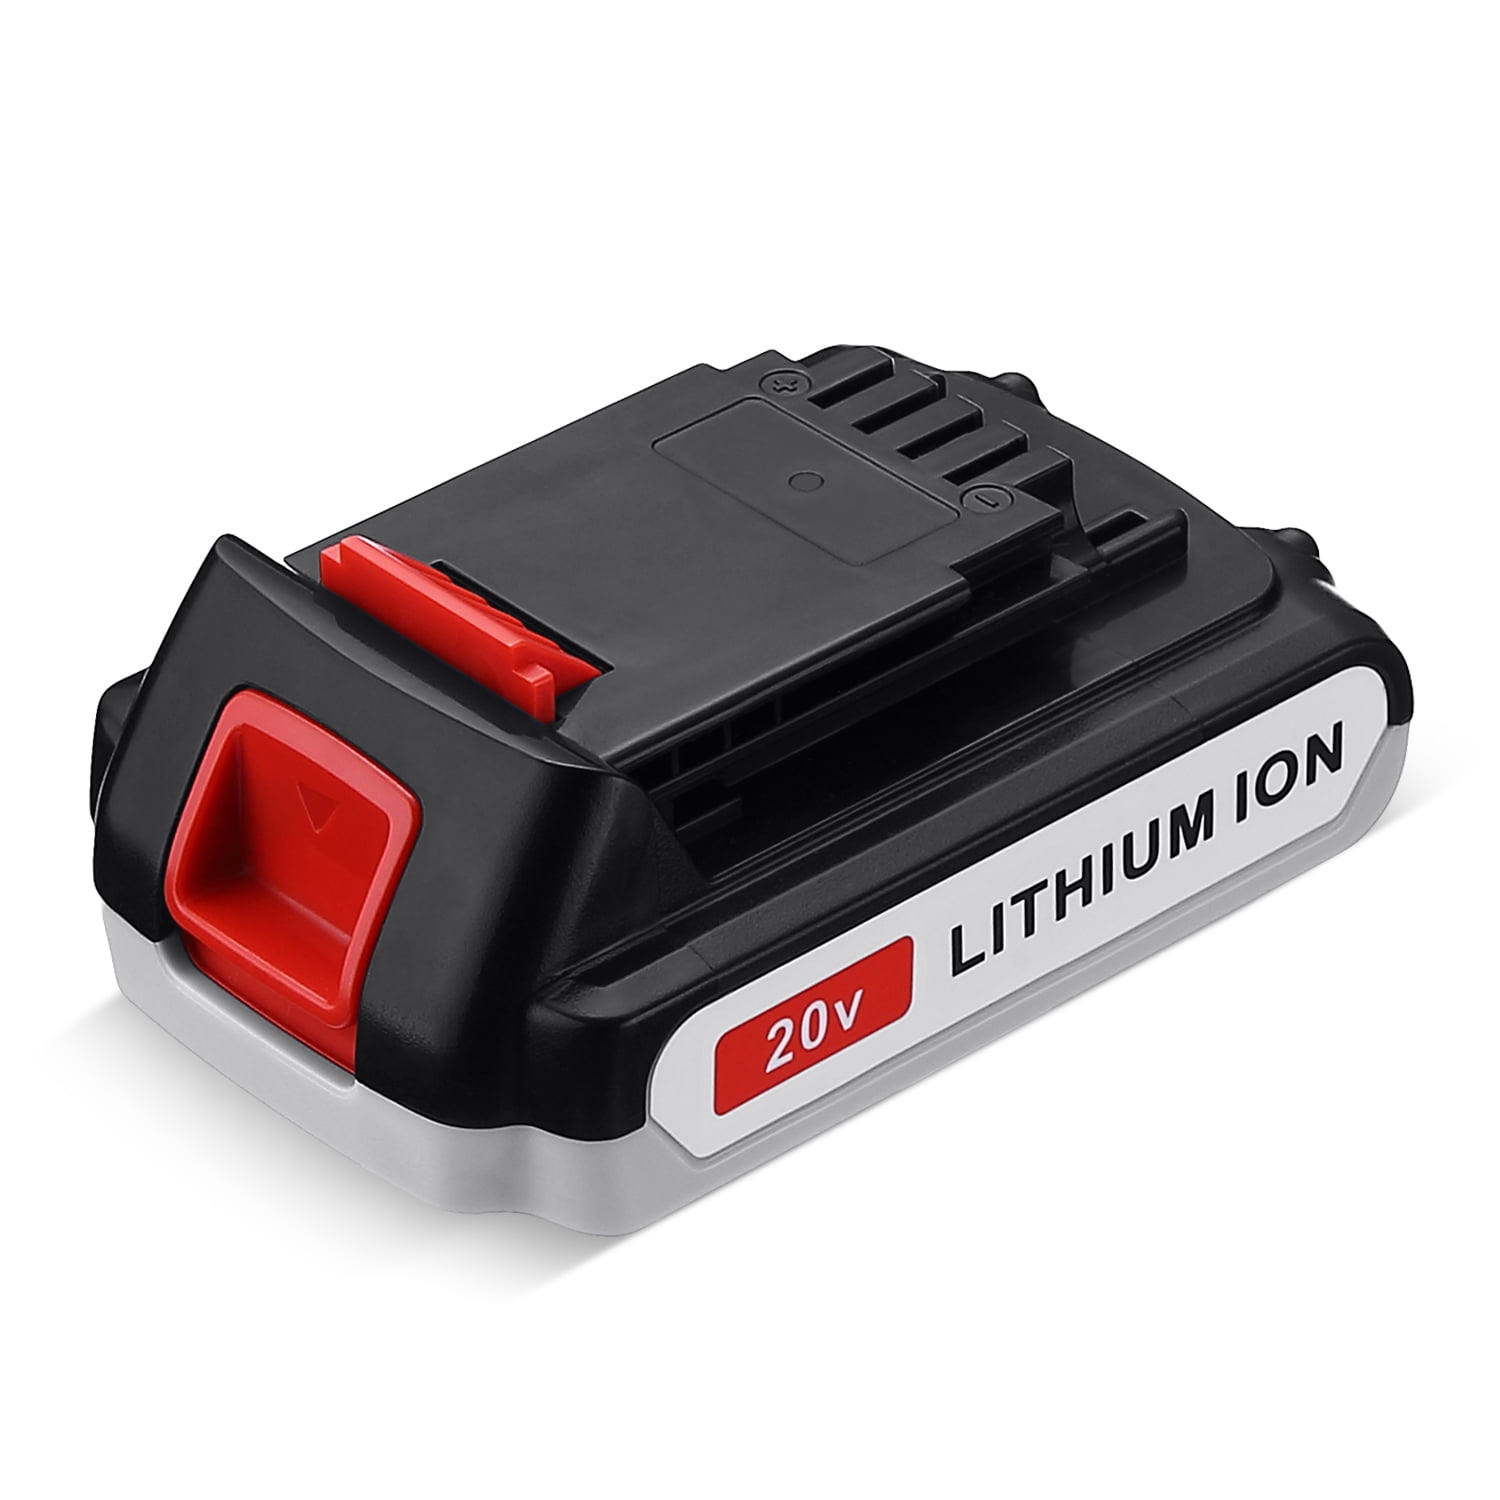 20V 2.0AH Lithium-Ion Battery for Black & Decker 20 Volt LB20 LBX20 LBXR20